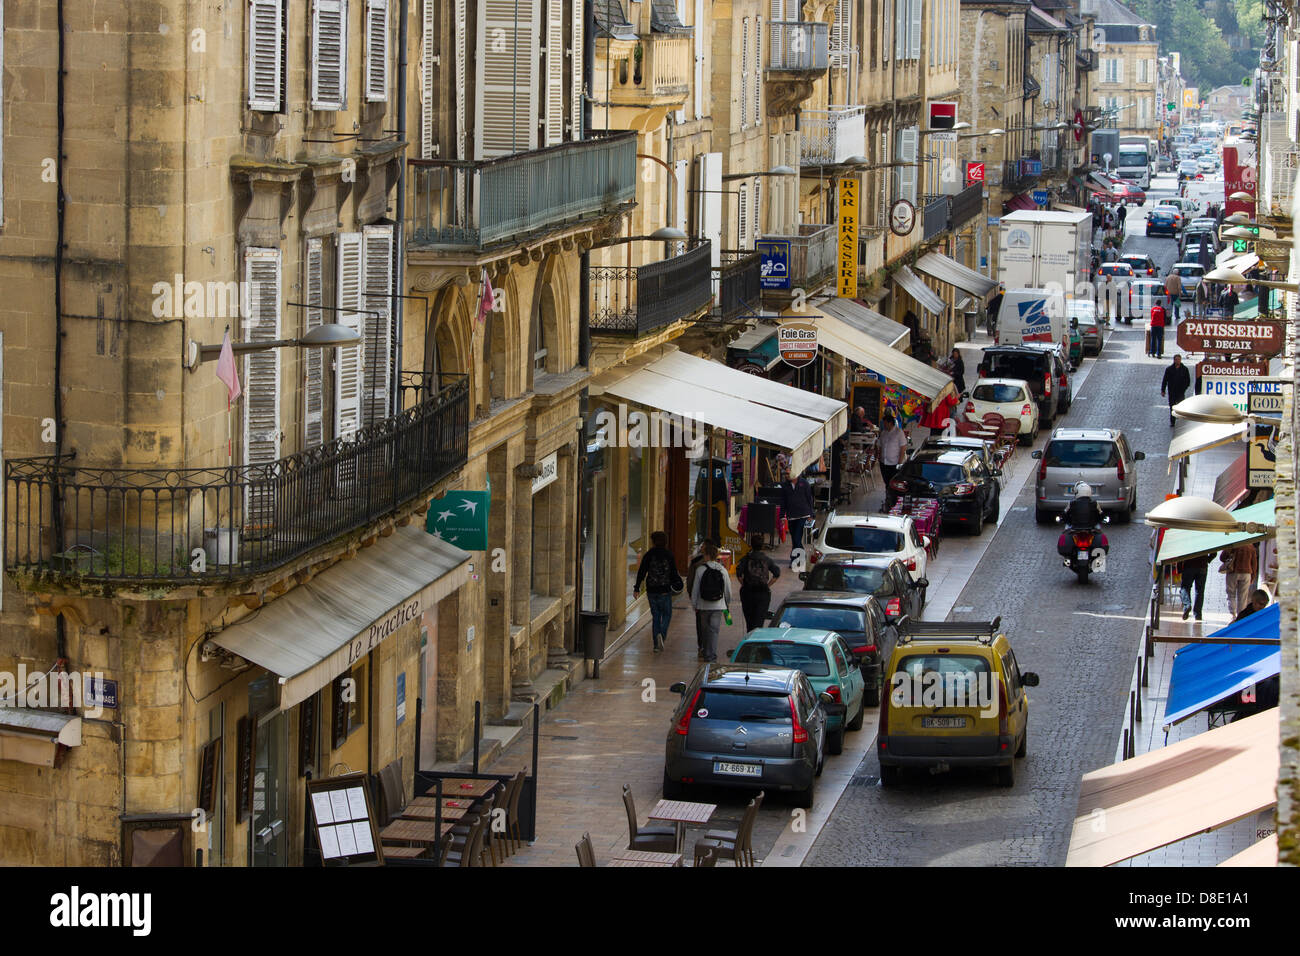 Les boutiques achalandées et les touristes le long de la rue de la République, la rue principale, dans la charmante ville de Sarlat, dans la région de la Dordogne Banque D'Images